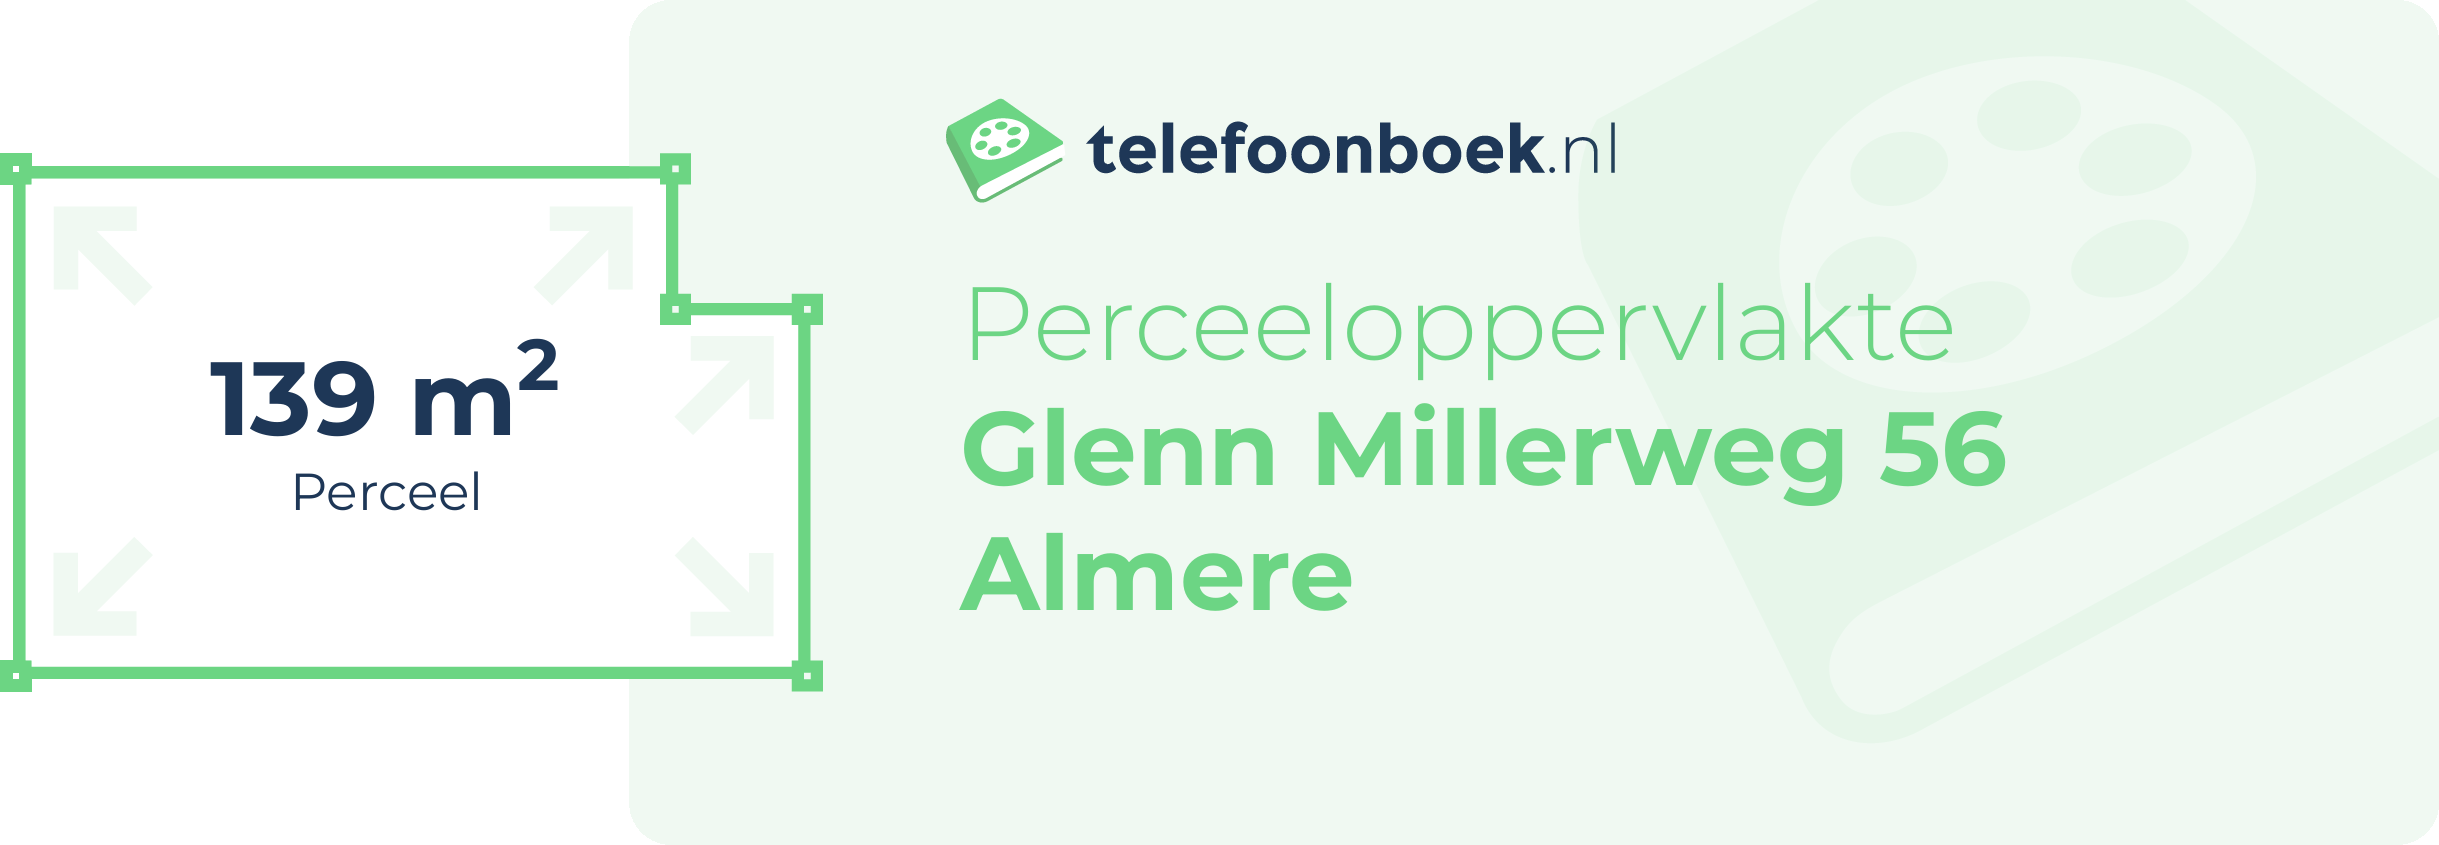 Perceeloppervlakte Glenn Millerweg 56 Almere